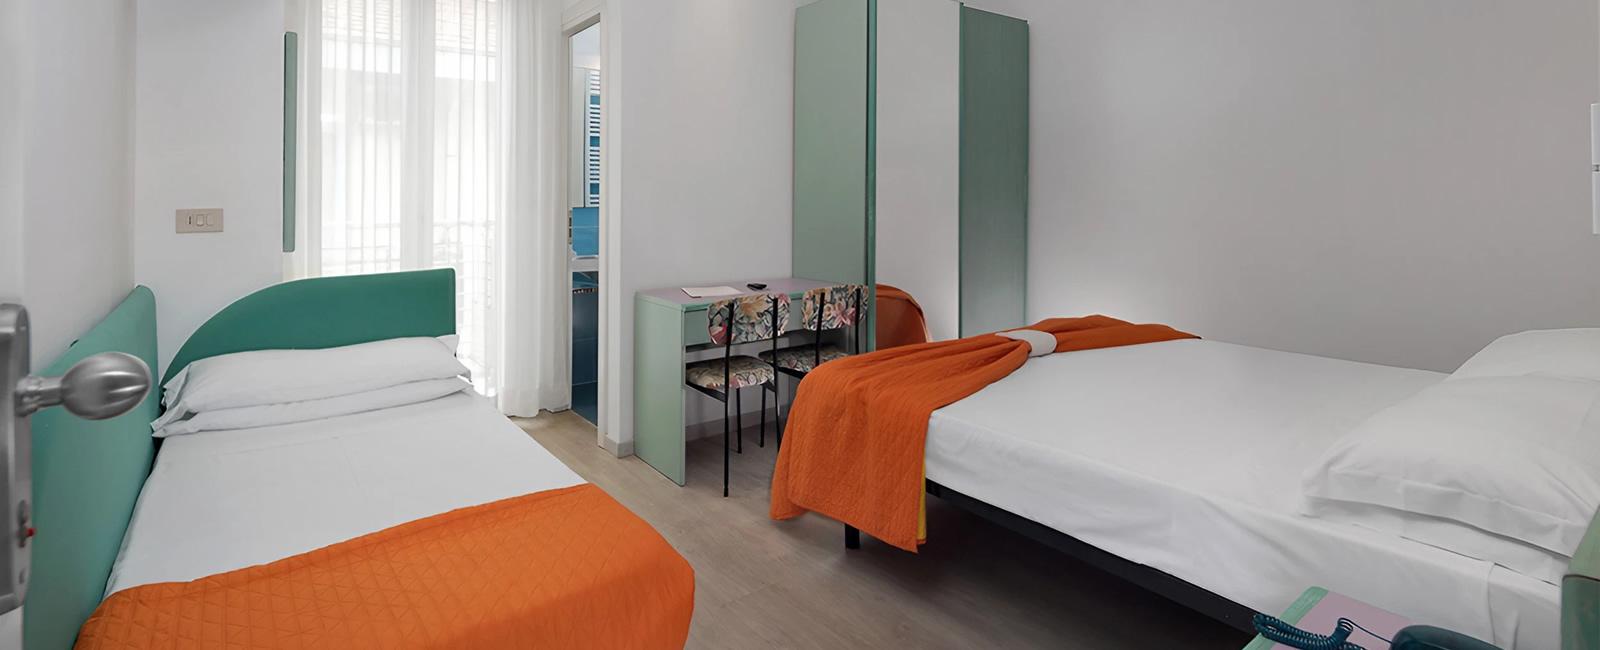 hoteleiffel en classic-rooms 019